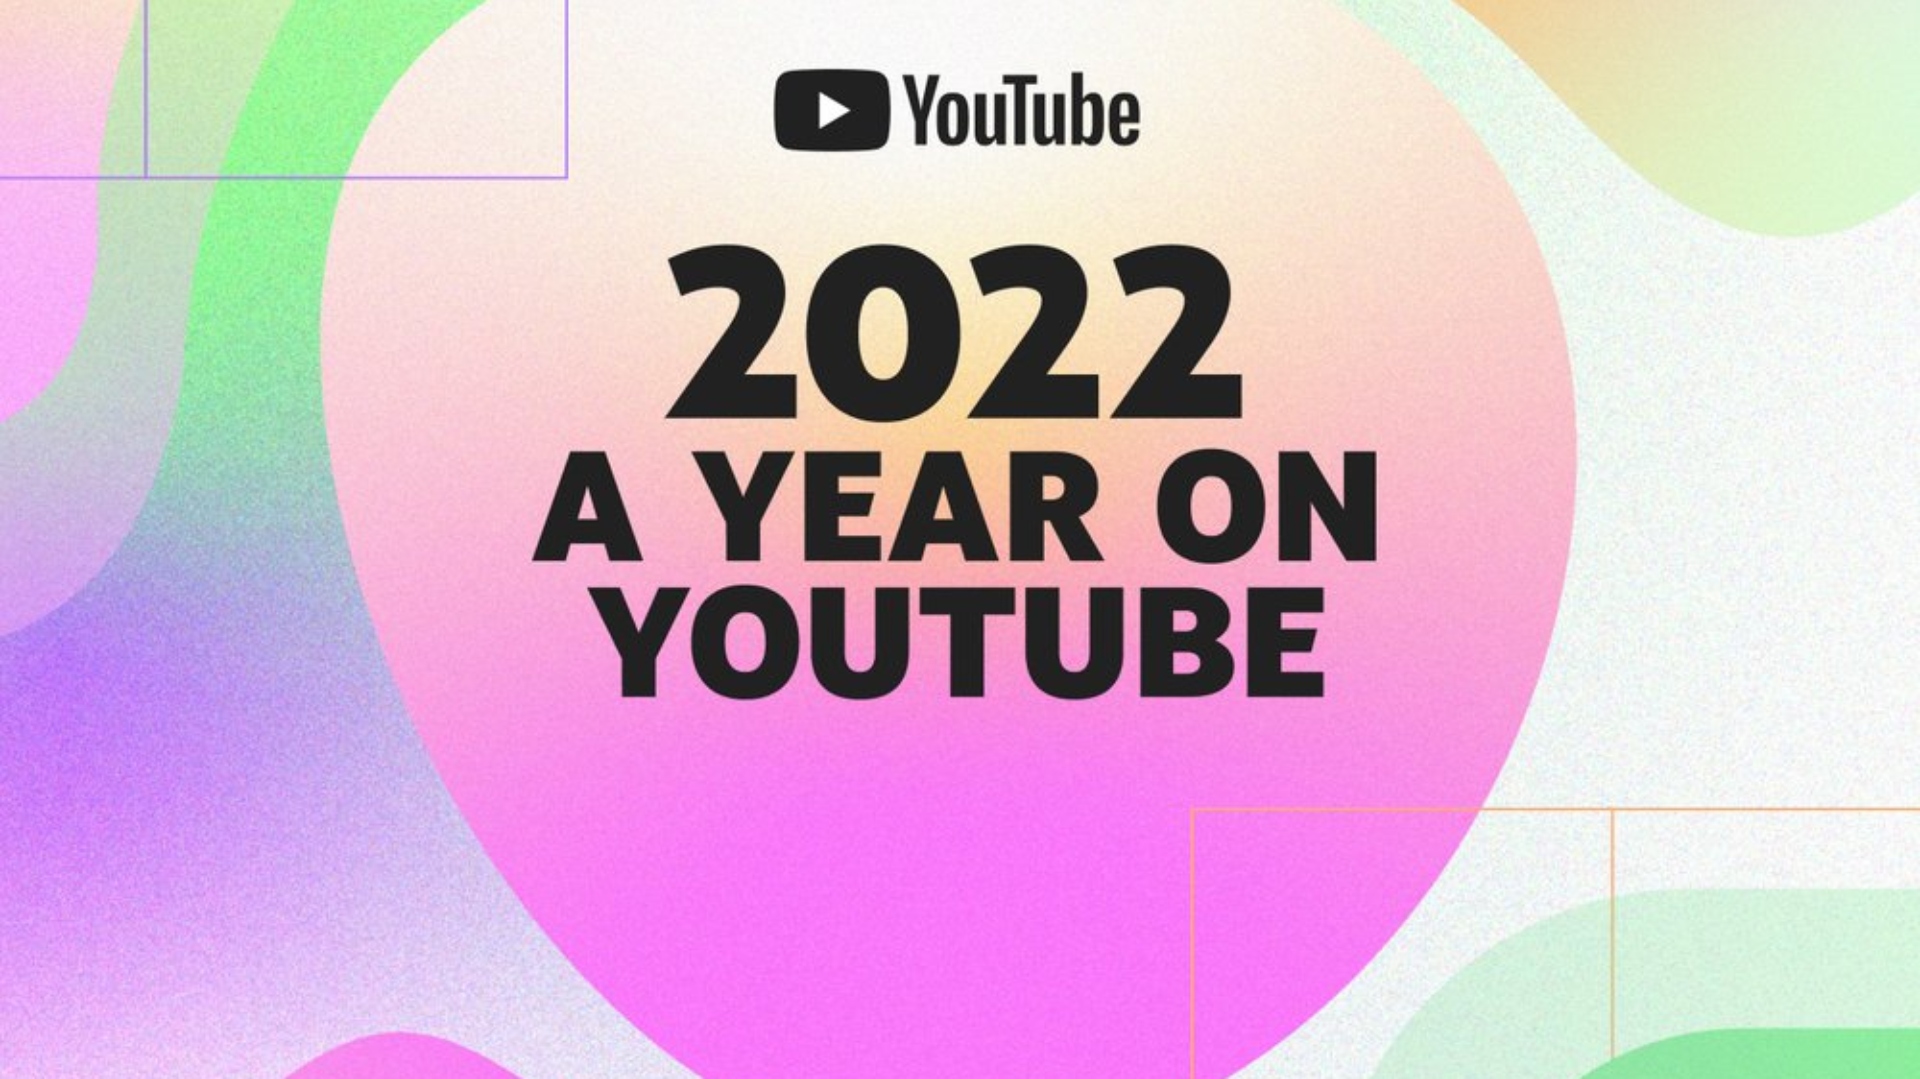 à¸§à¸´à¸”à¸µà¹‚à¸­ Youtube à¸—à¸µà¹ˆà¸”à¸µà¸—à¸µà¹ˆà¸ªà¸¸à¸”à¹ƒà¸™à¸›à¸µ 2022